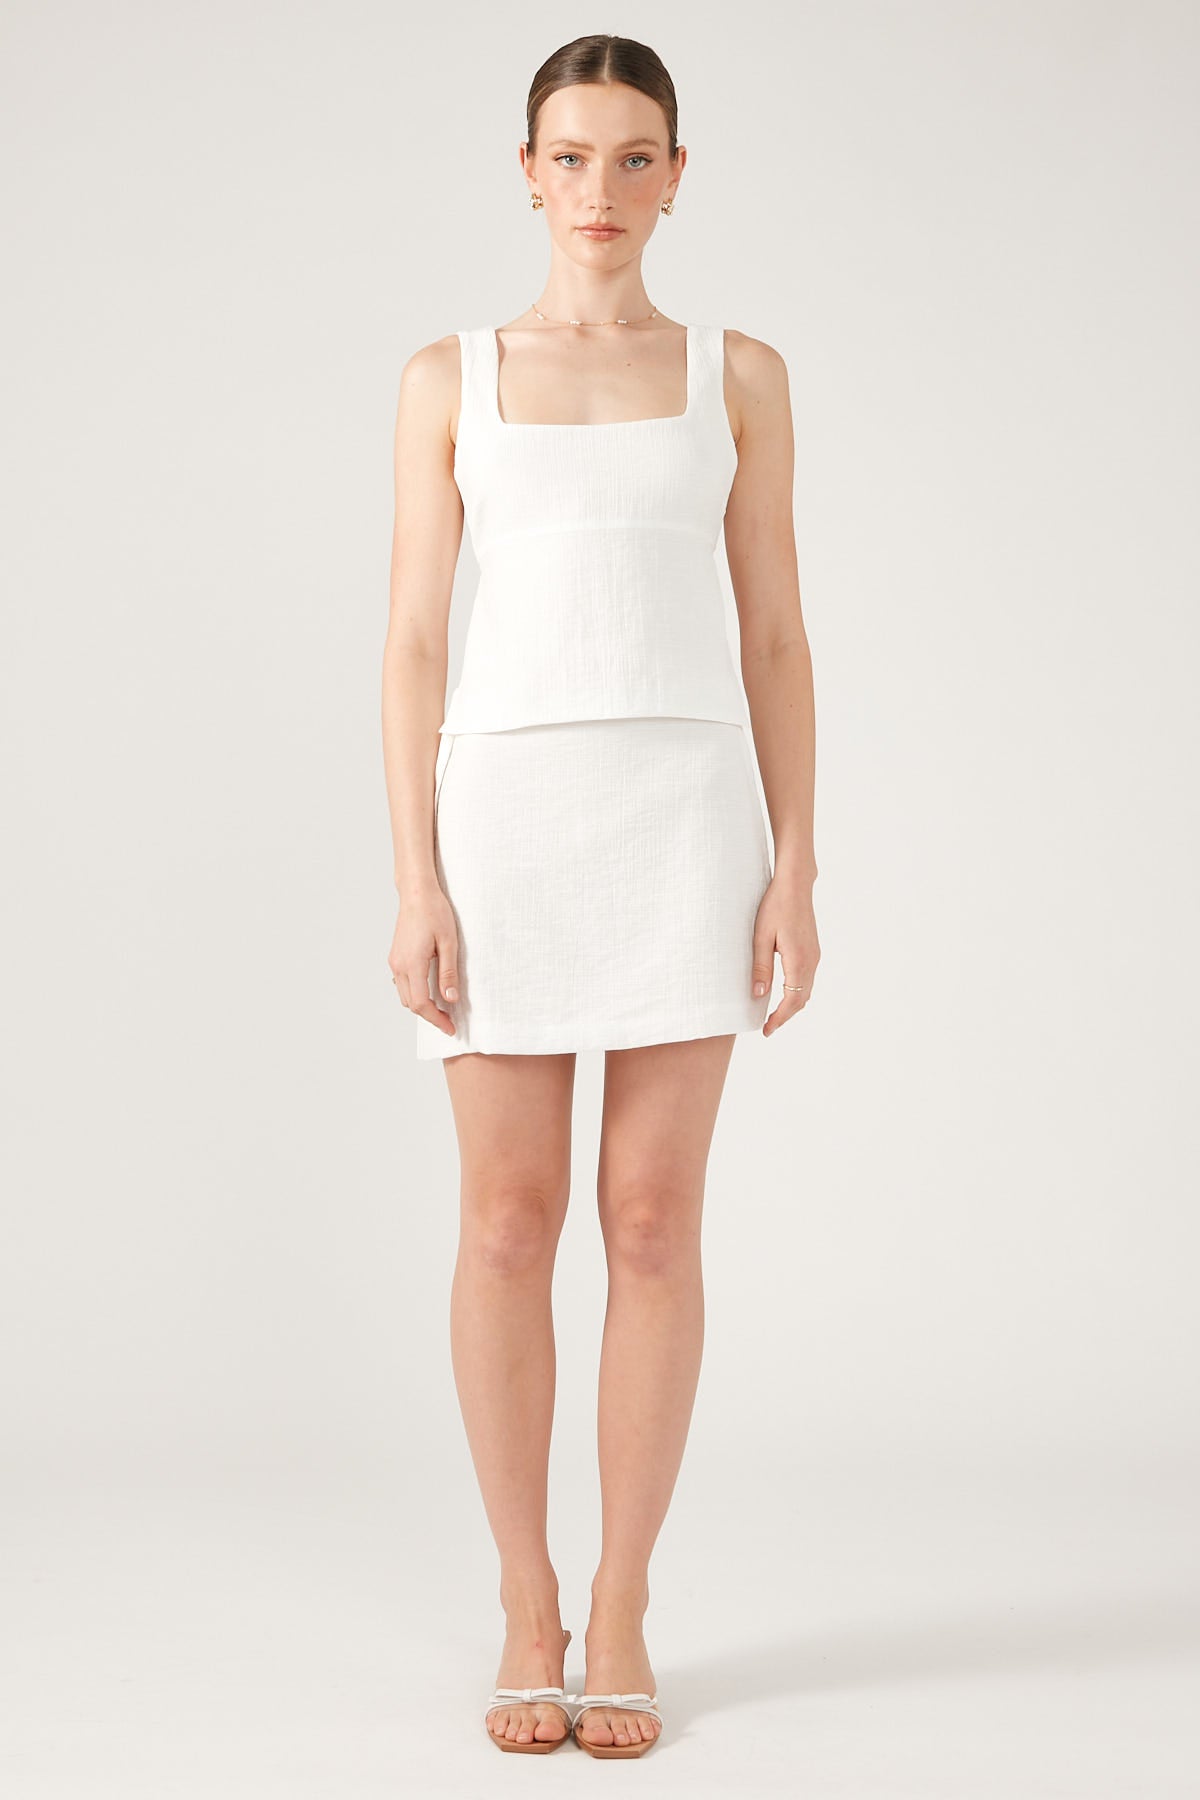 Perfect Stranger Dominique Elissa Golden Hour Tie Side Mini Skirt White